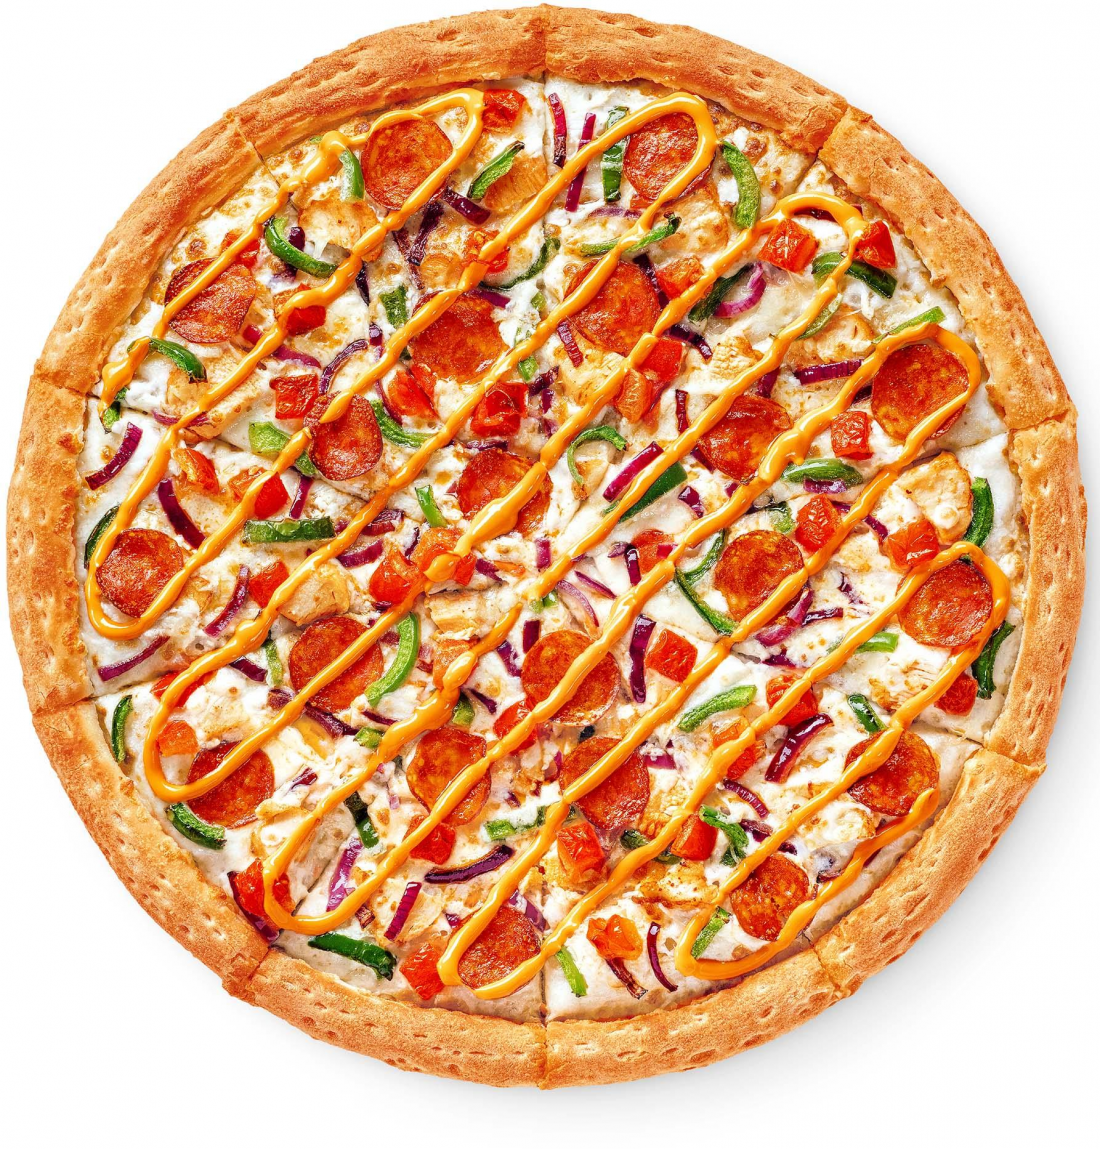 состав пиццы пепперони в додо фото 32